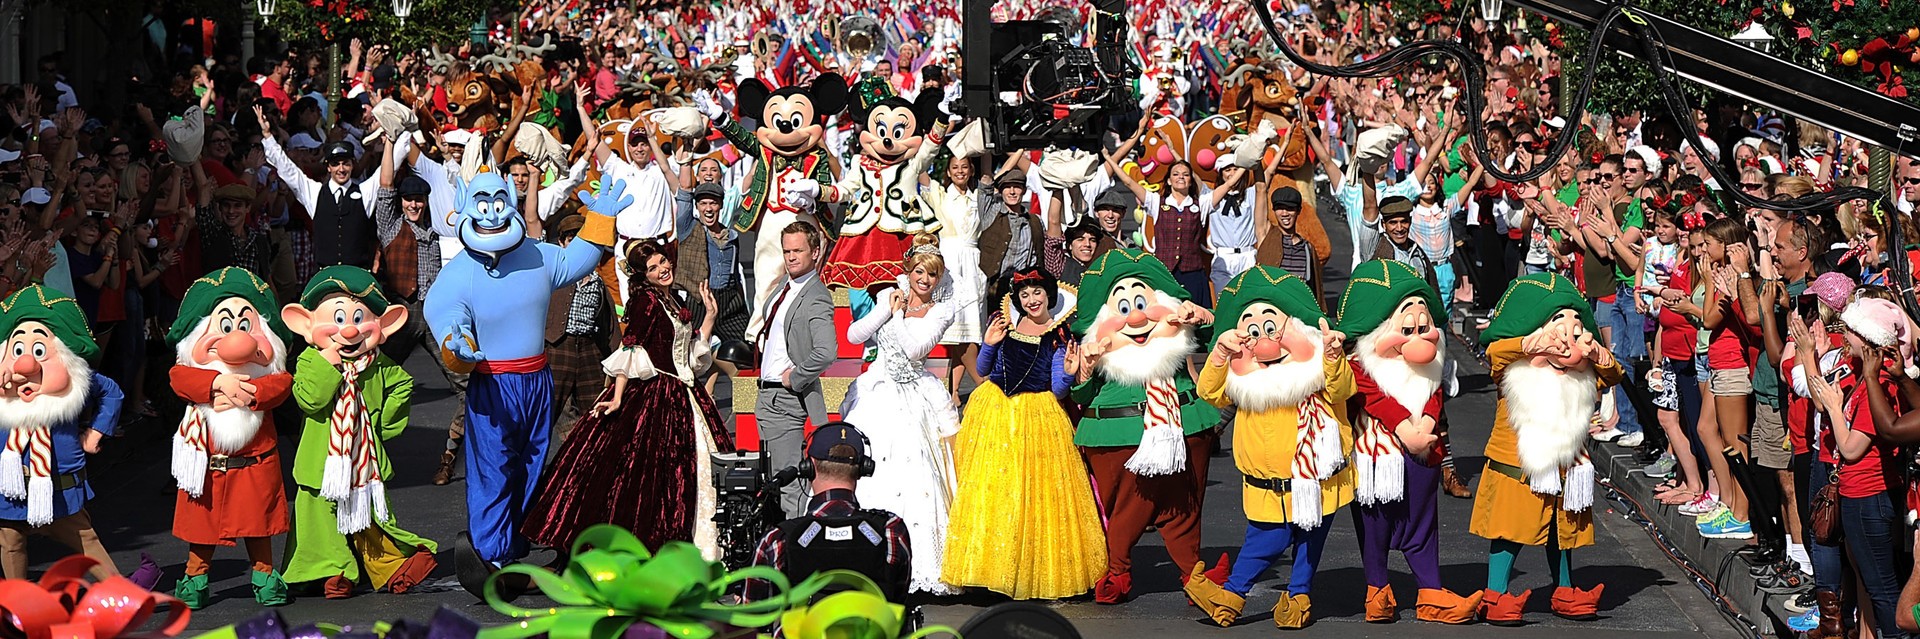 华特迪士尼世界(Walt Disney World)